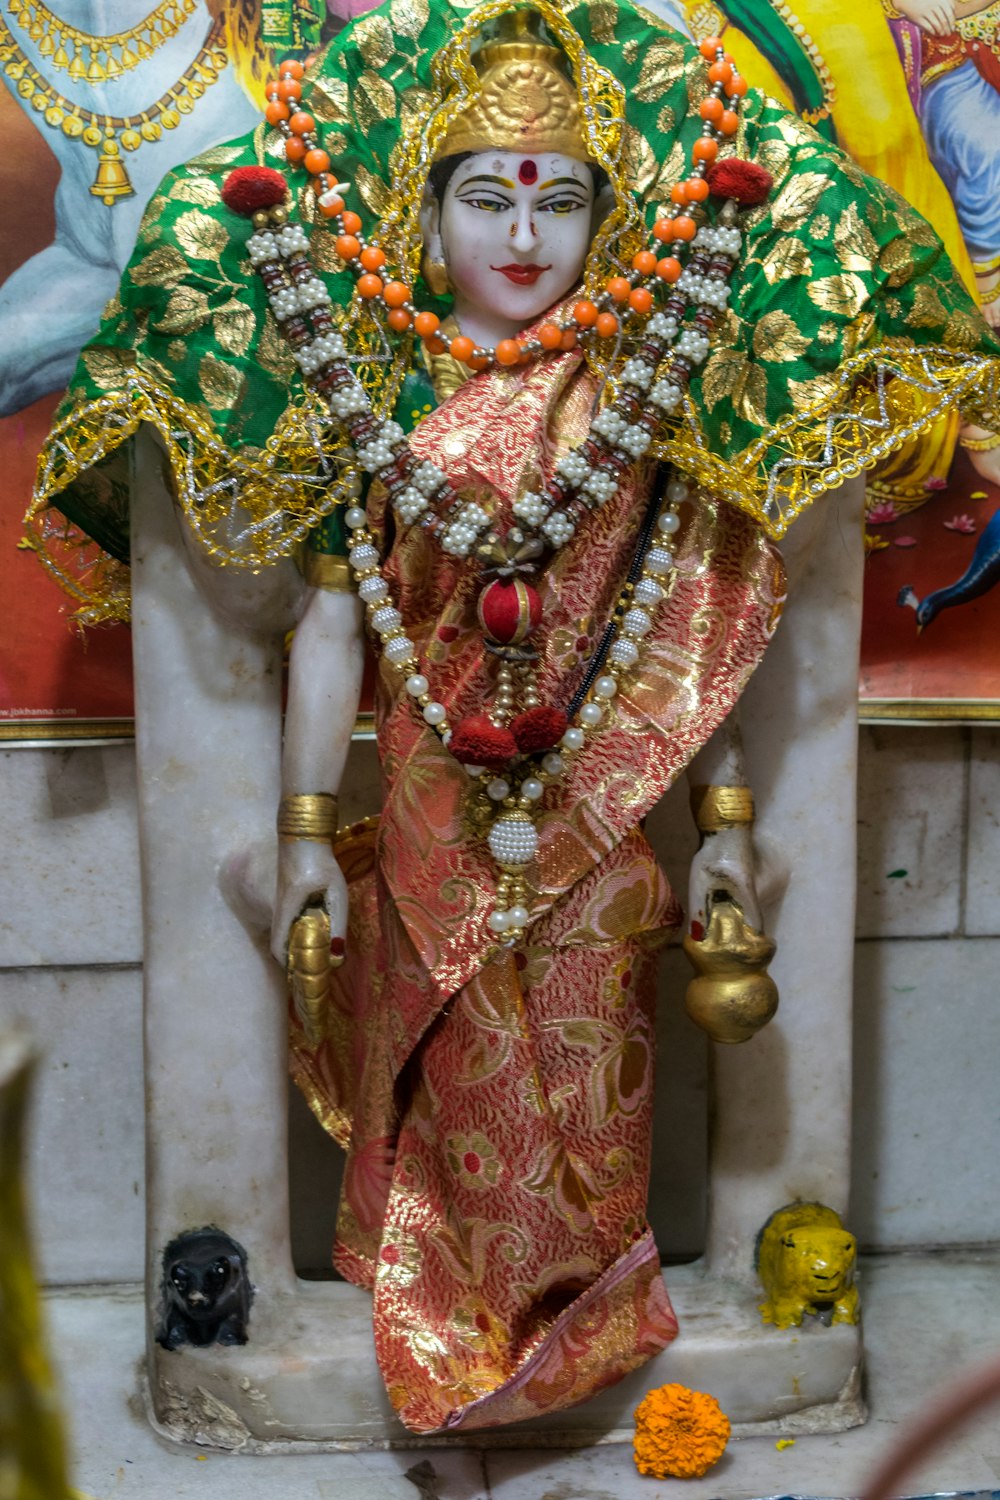 Eine Statue eines hinduistischen Gottes in einem Tempel